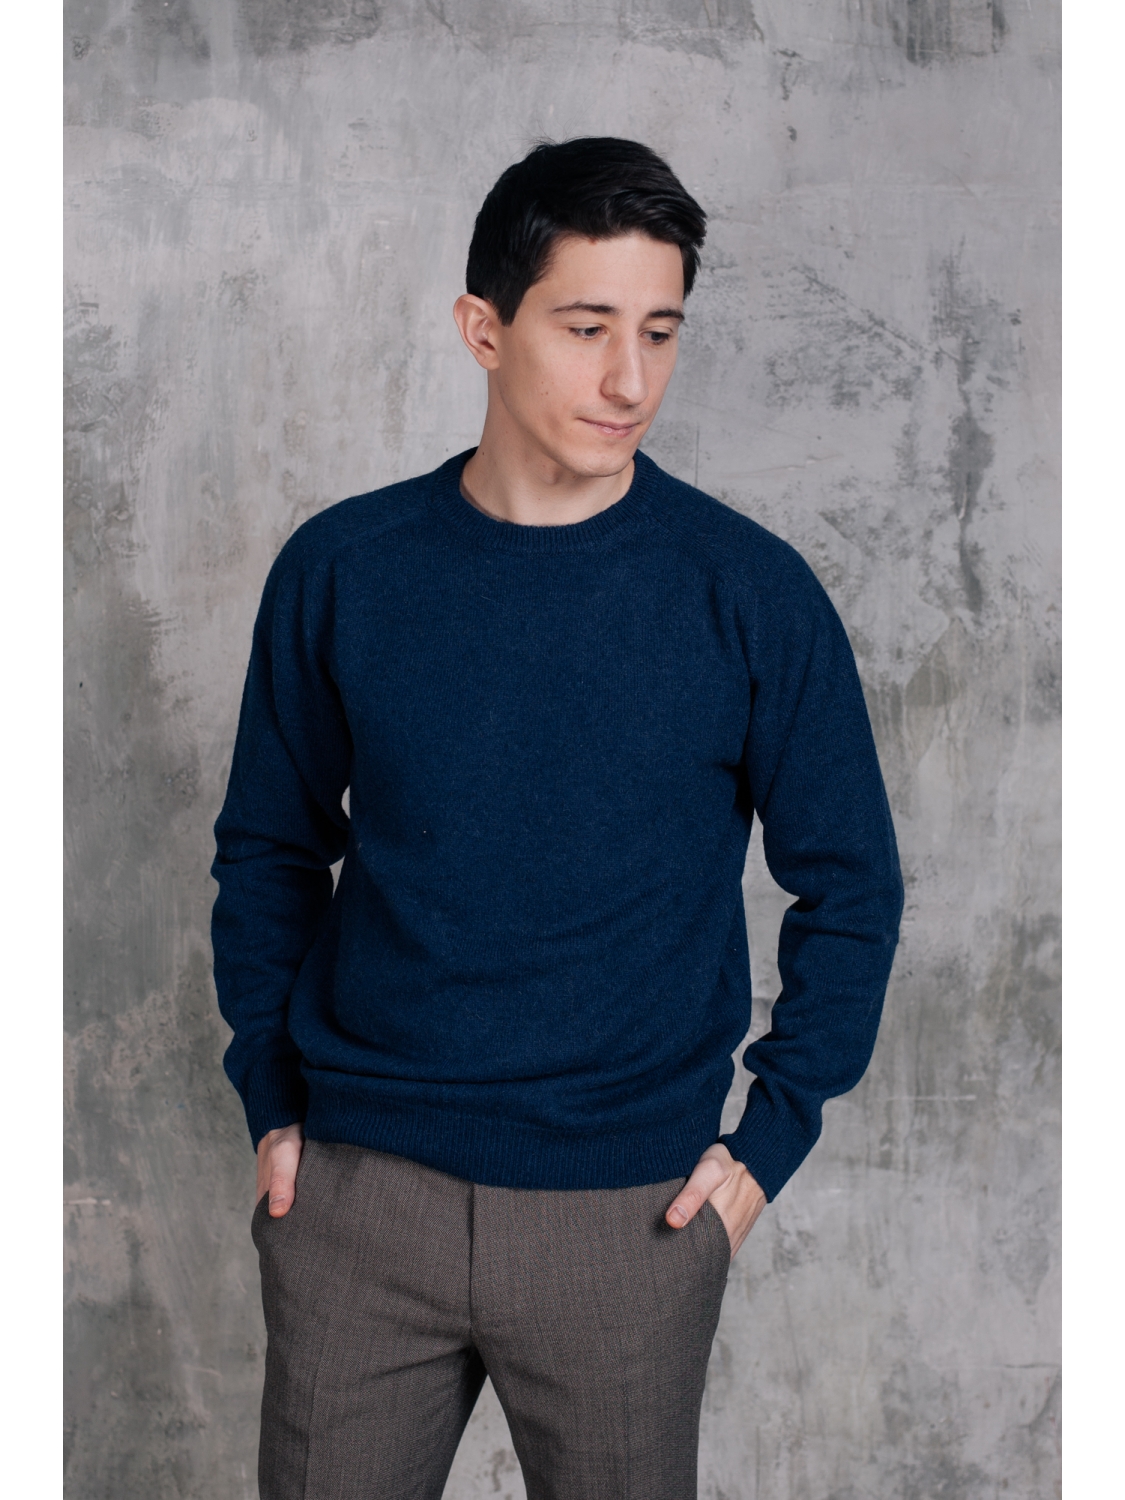 Синий мужской свитер из верблюжьей шерсти купить в Москве винтернет-магазине, шерстяной синий